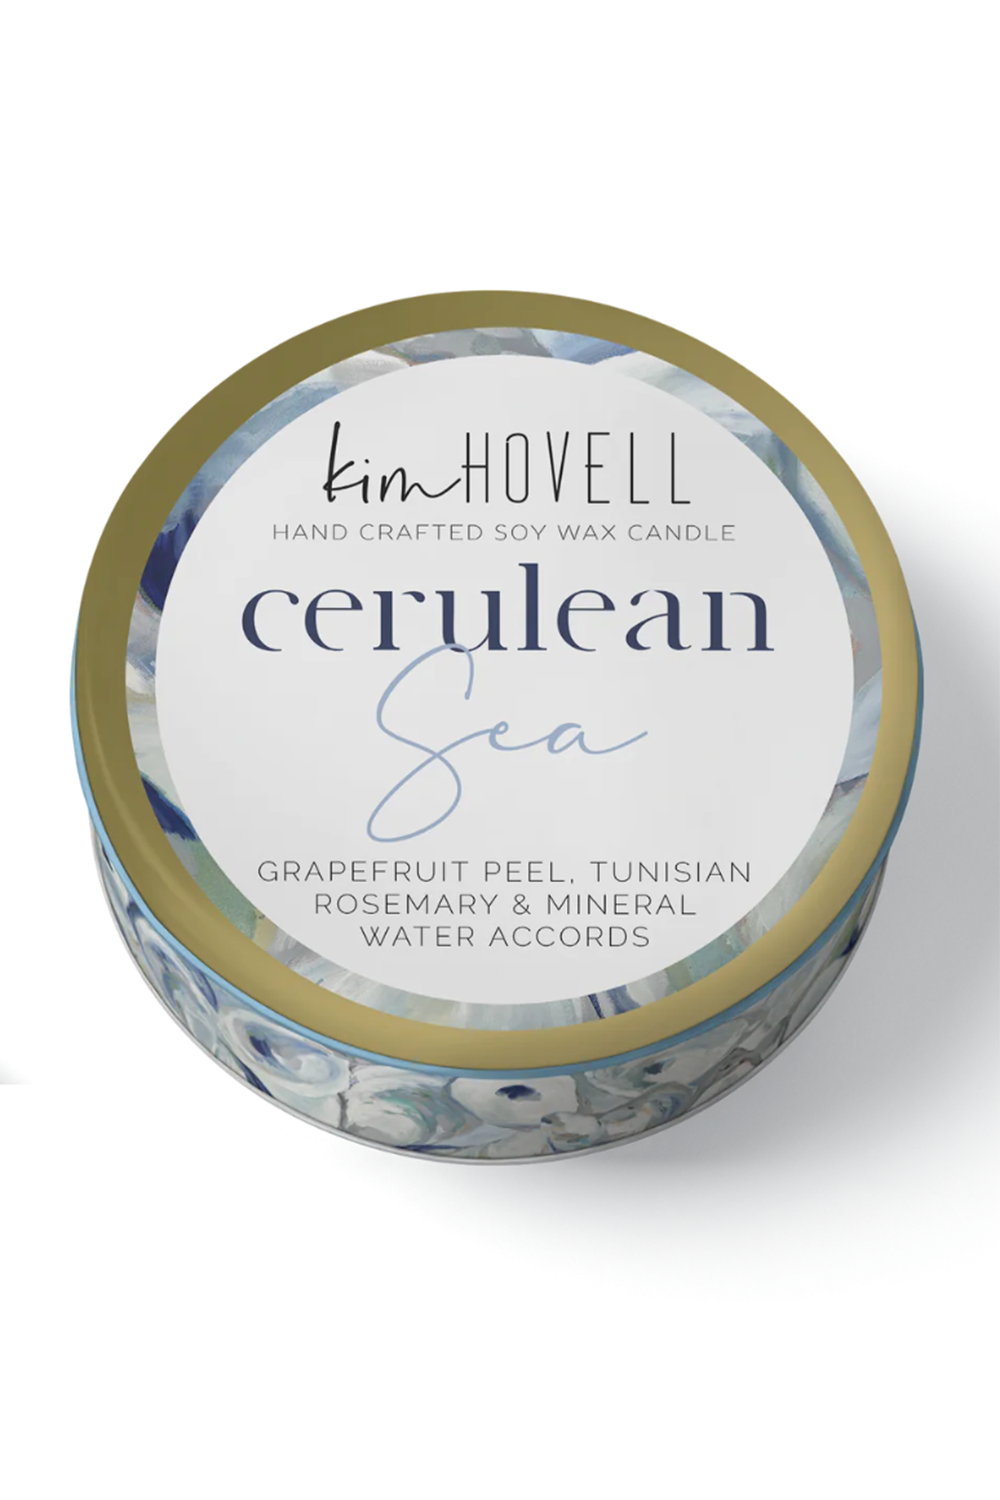 Kim Hovell + Annapolis Mini Tin Candle - Cerulean Sea